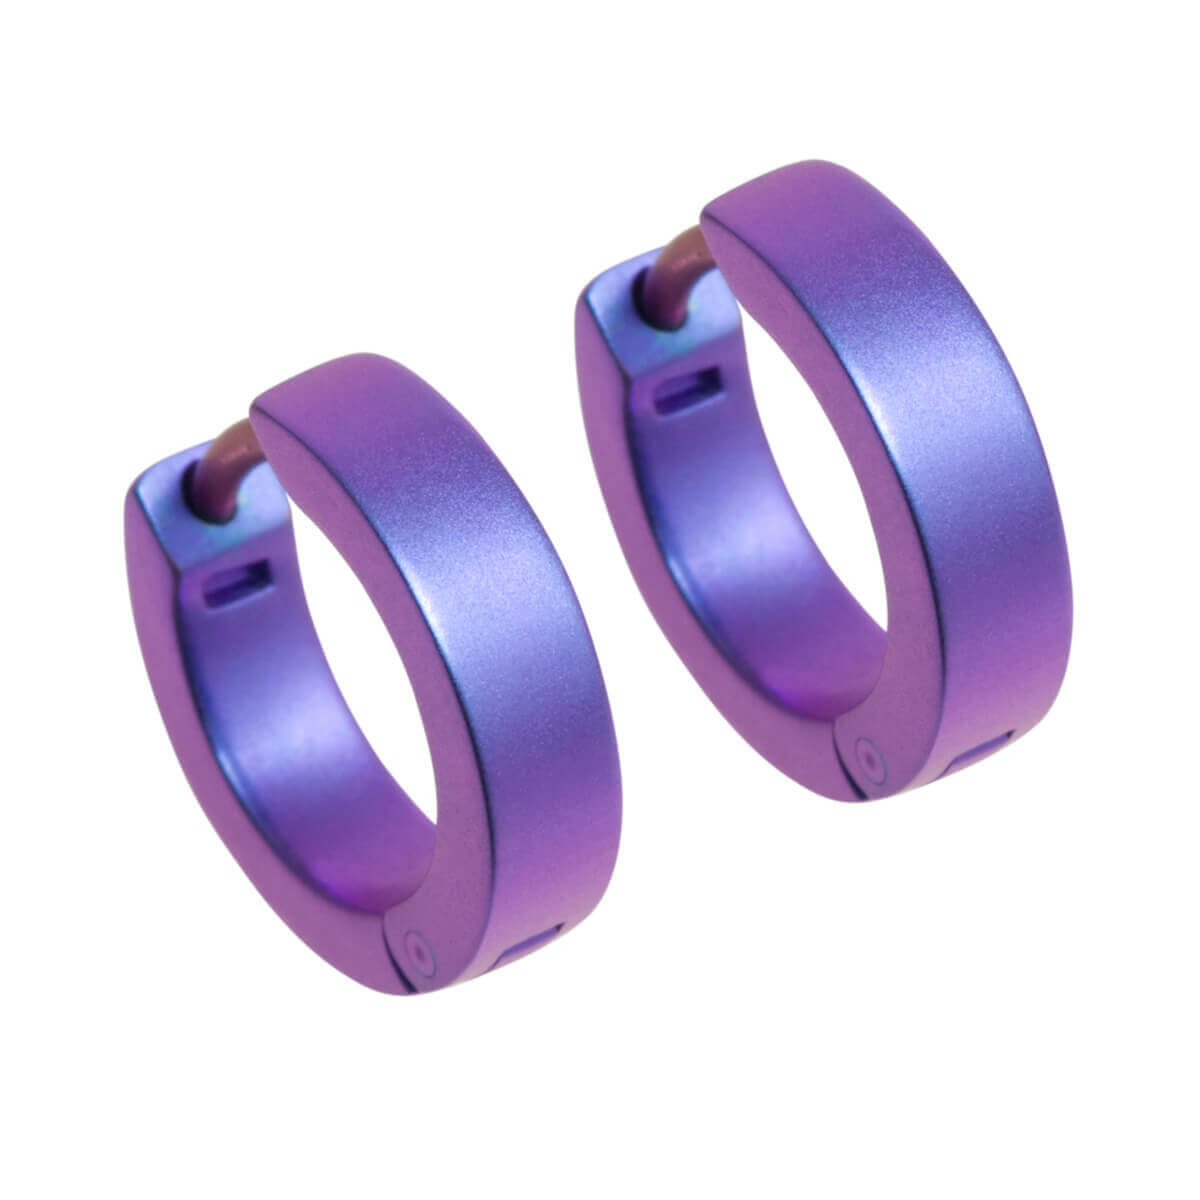 Titanium Small Hinged Hoop Earrings - Pink/Purple Tones